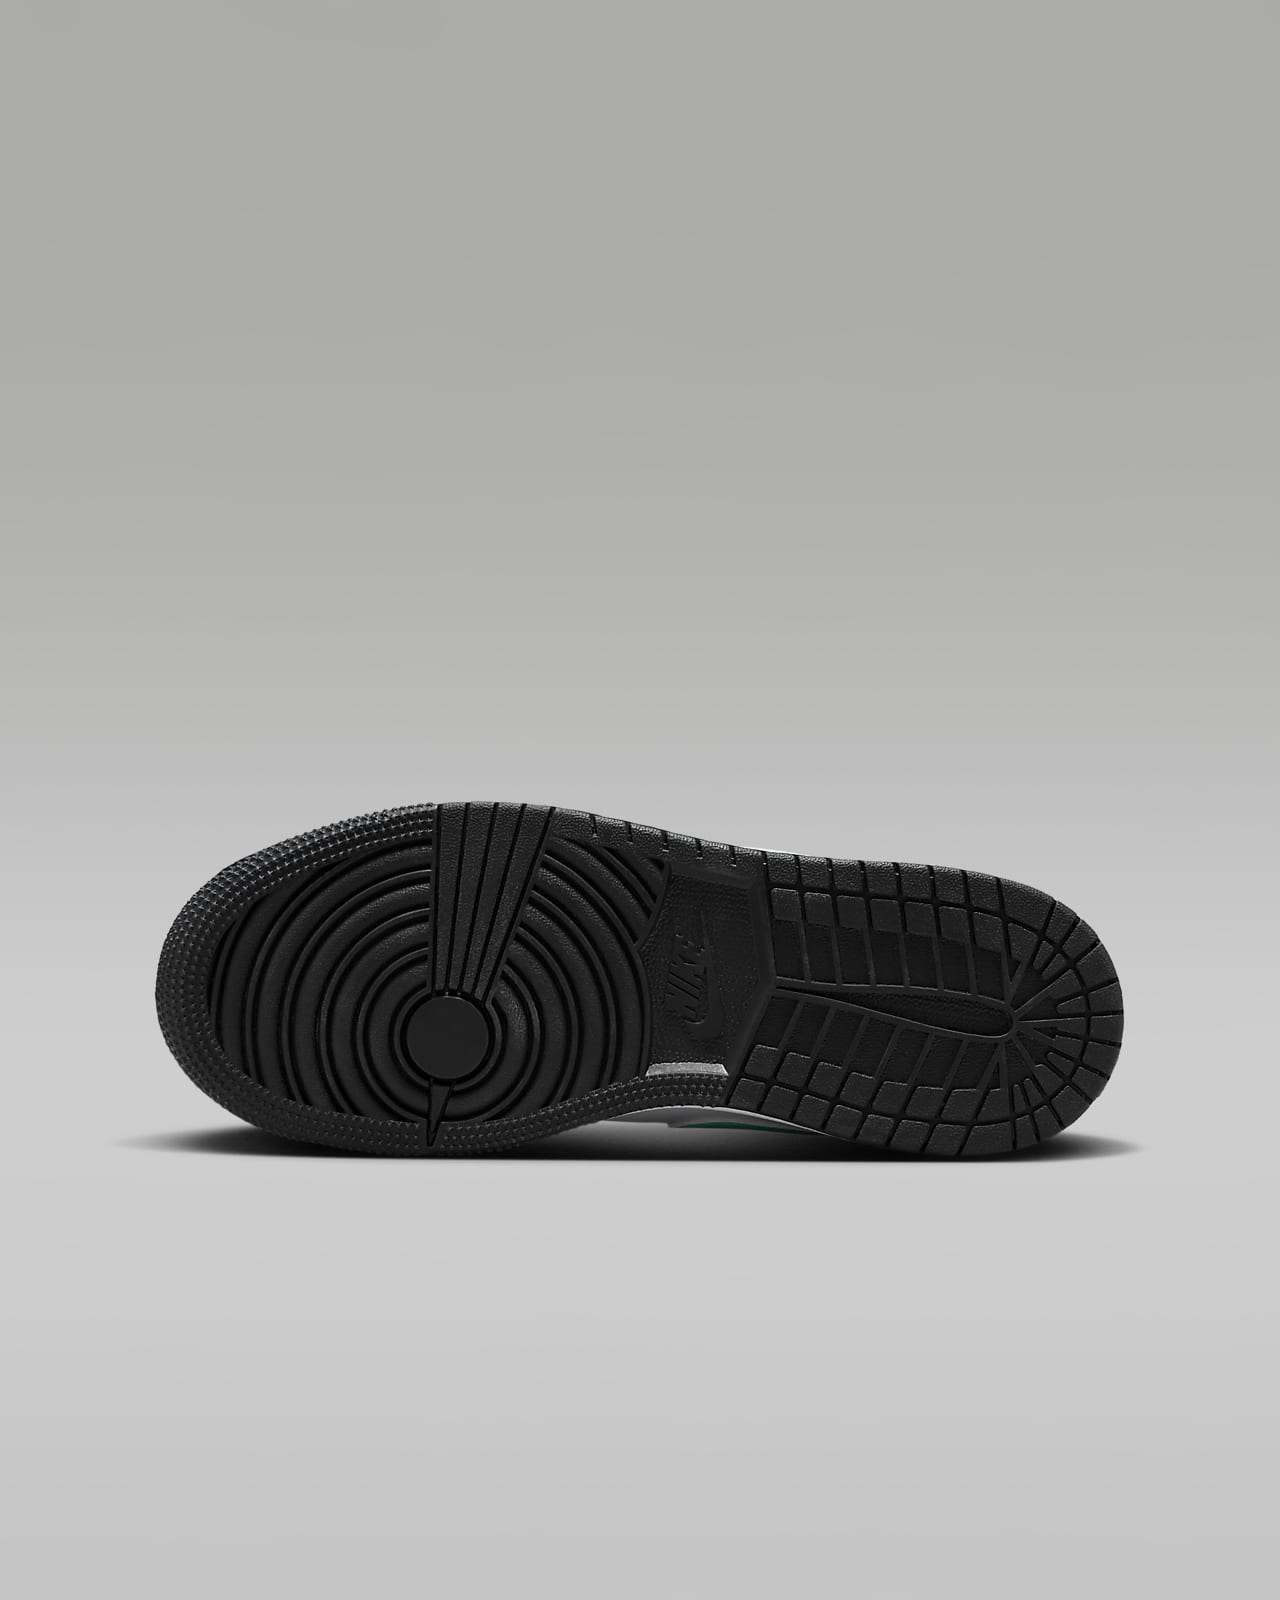 Air Jordan 1 Low Premium Black 25.5255cm